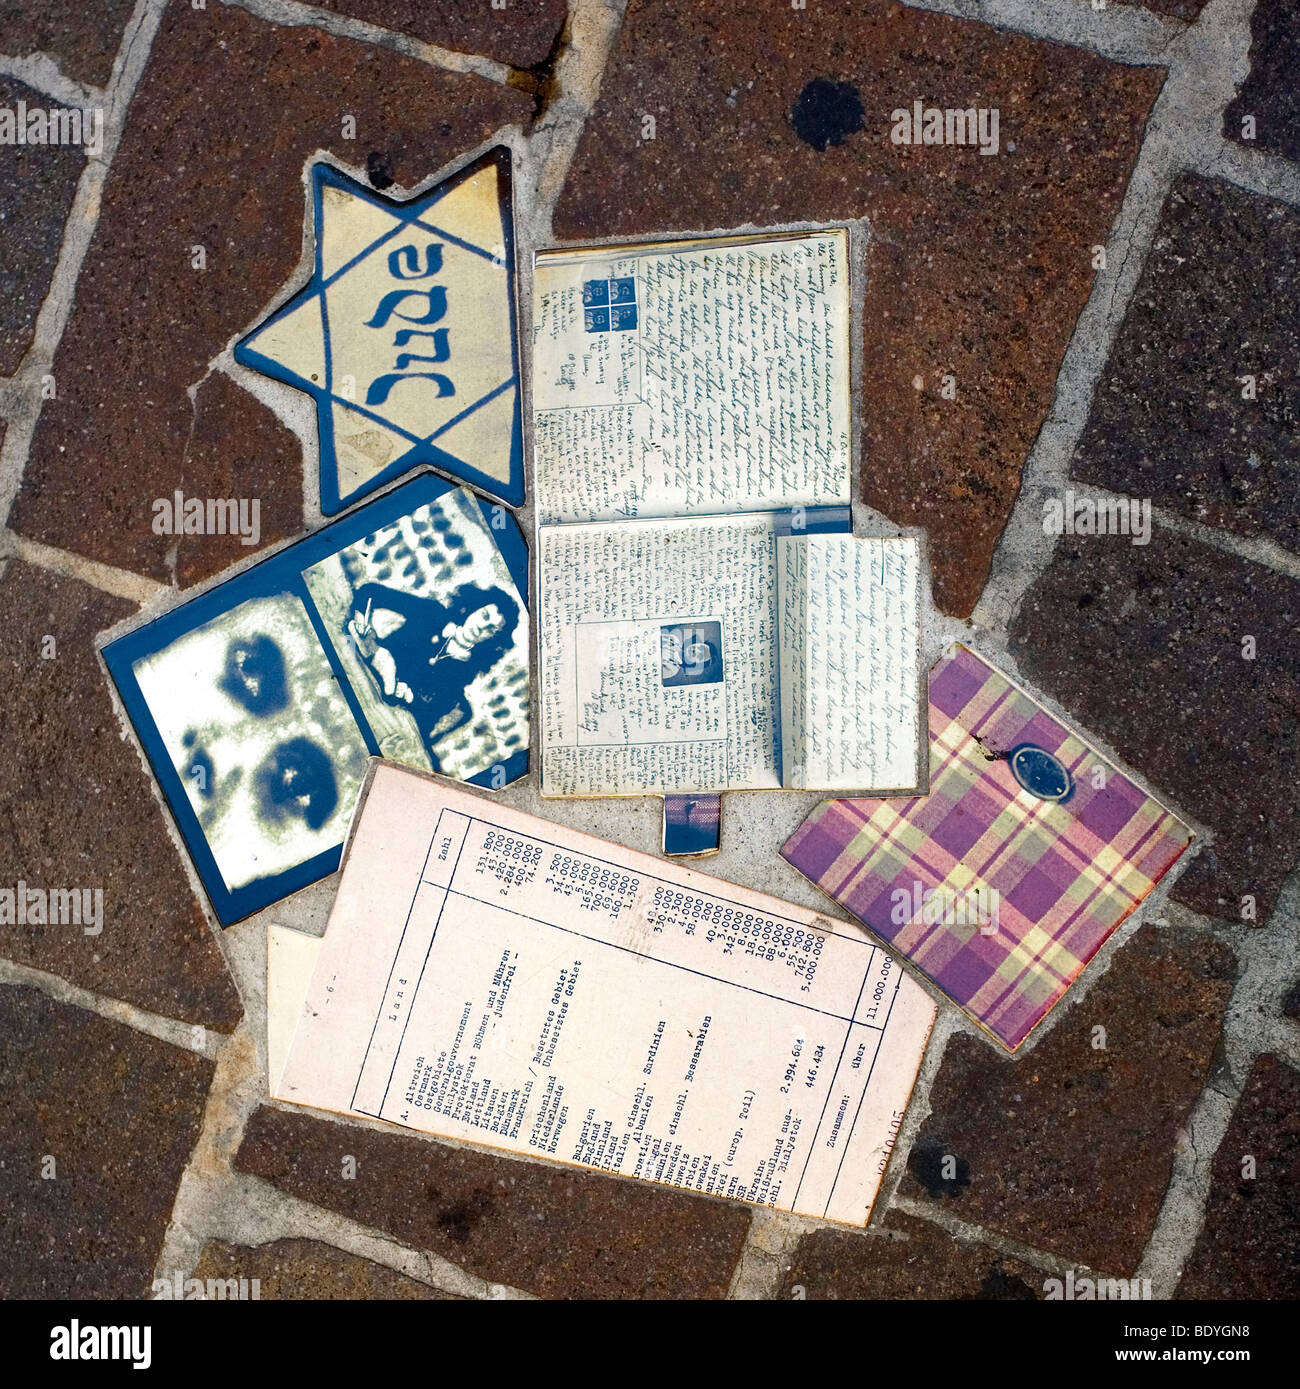 L'Anne Frank Holocaust Memorial Collage dans la Piazza del Popolo, de la ville de Pesaro, Marches, Italie Banque D'Images